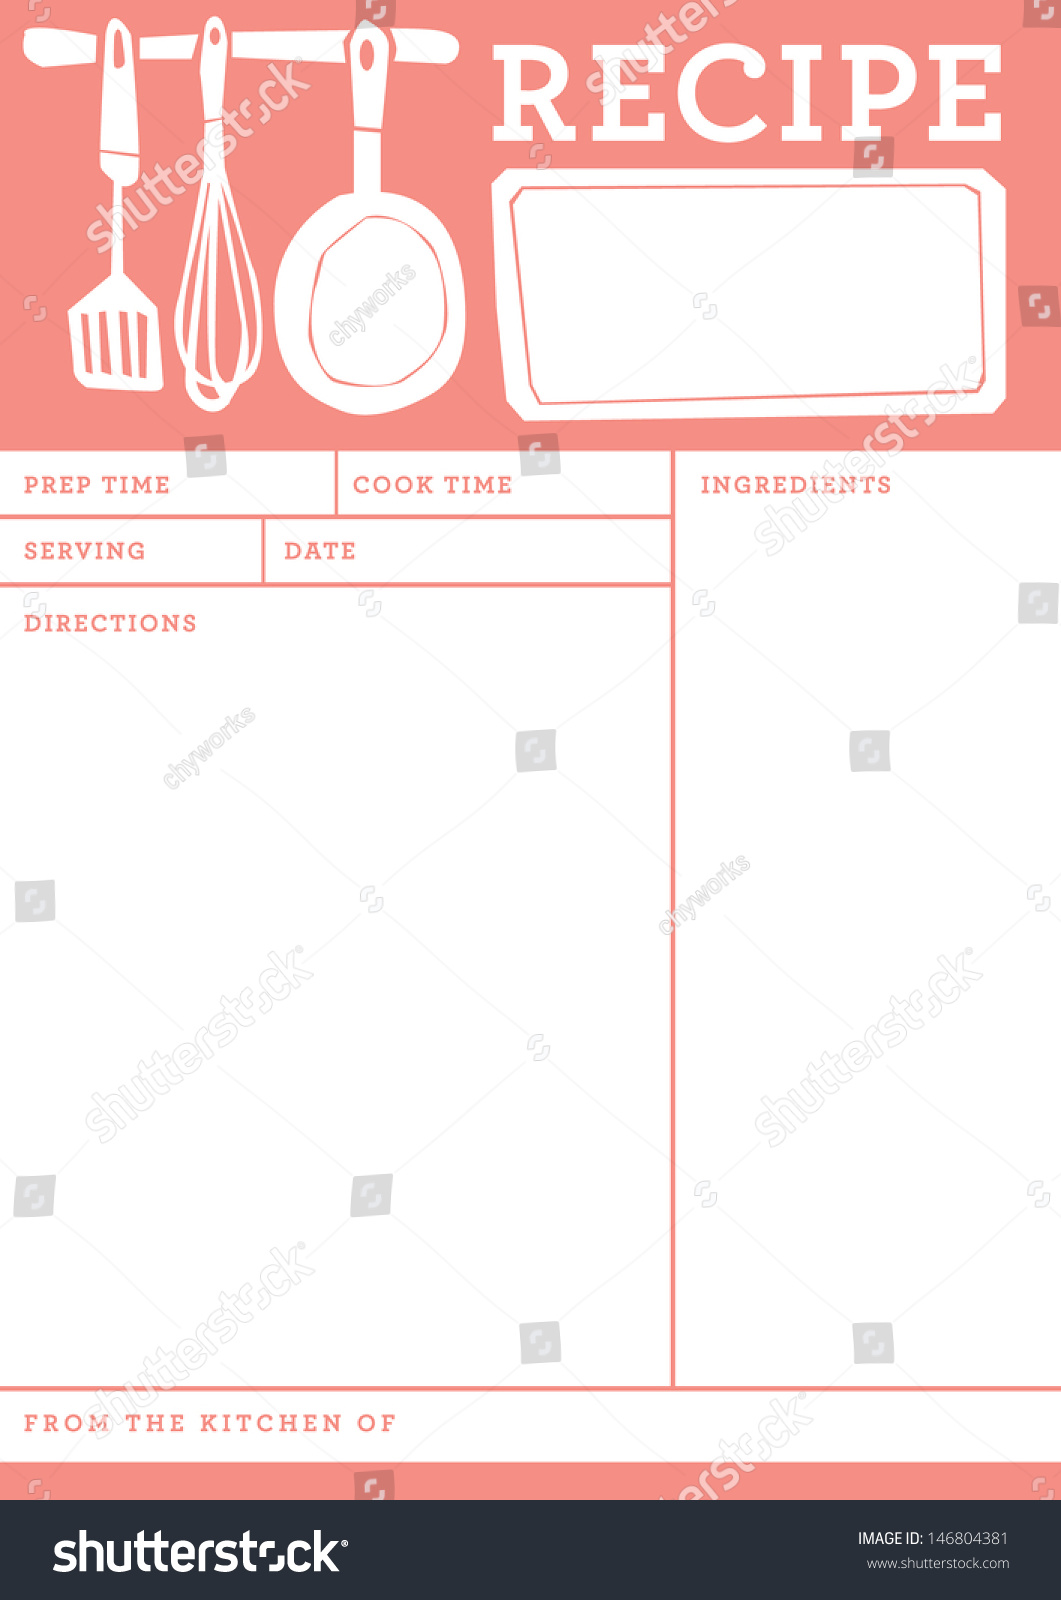 レシピカード キッチンノートテンプレート のベクター画像素材 ロイヤリティフリー